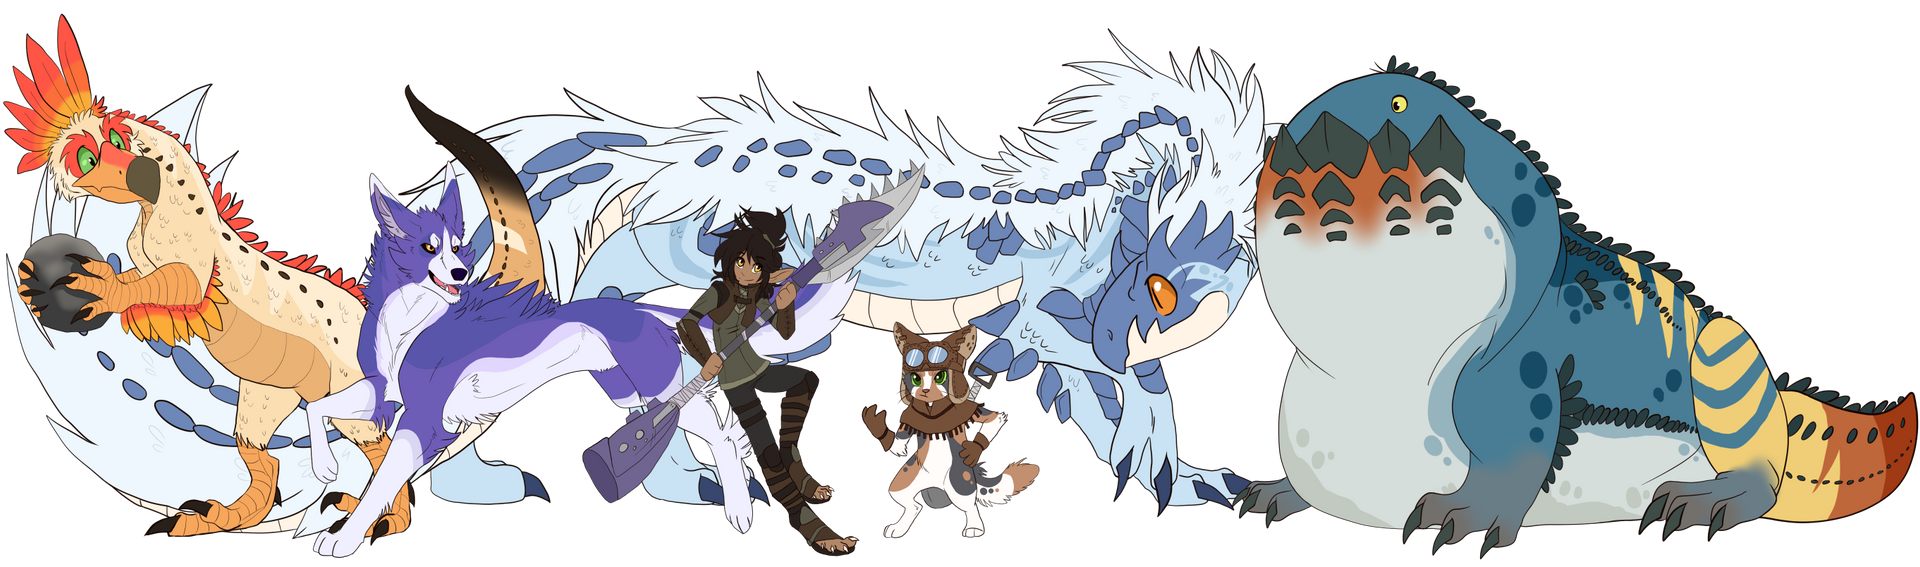 Monster Hunter Team of Monsters by Firewolf-Anime on DeviantArt